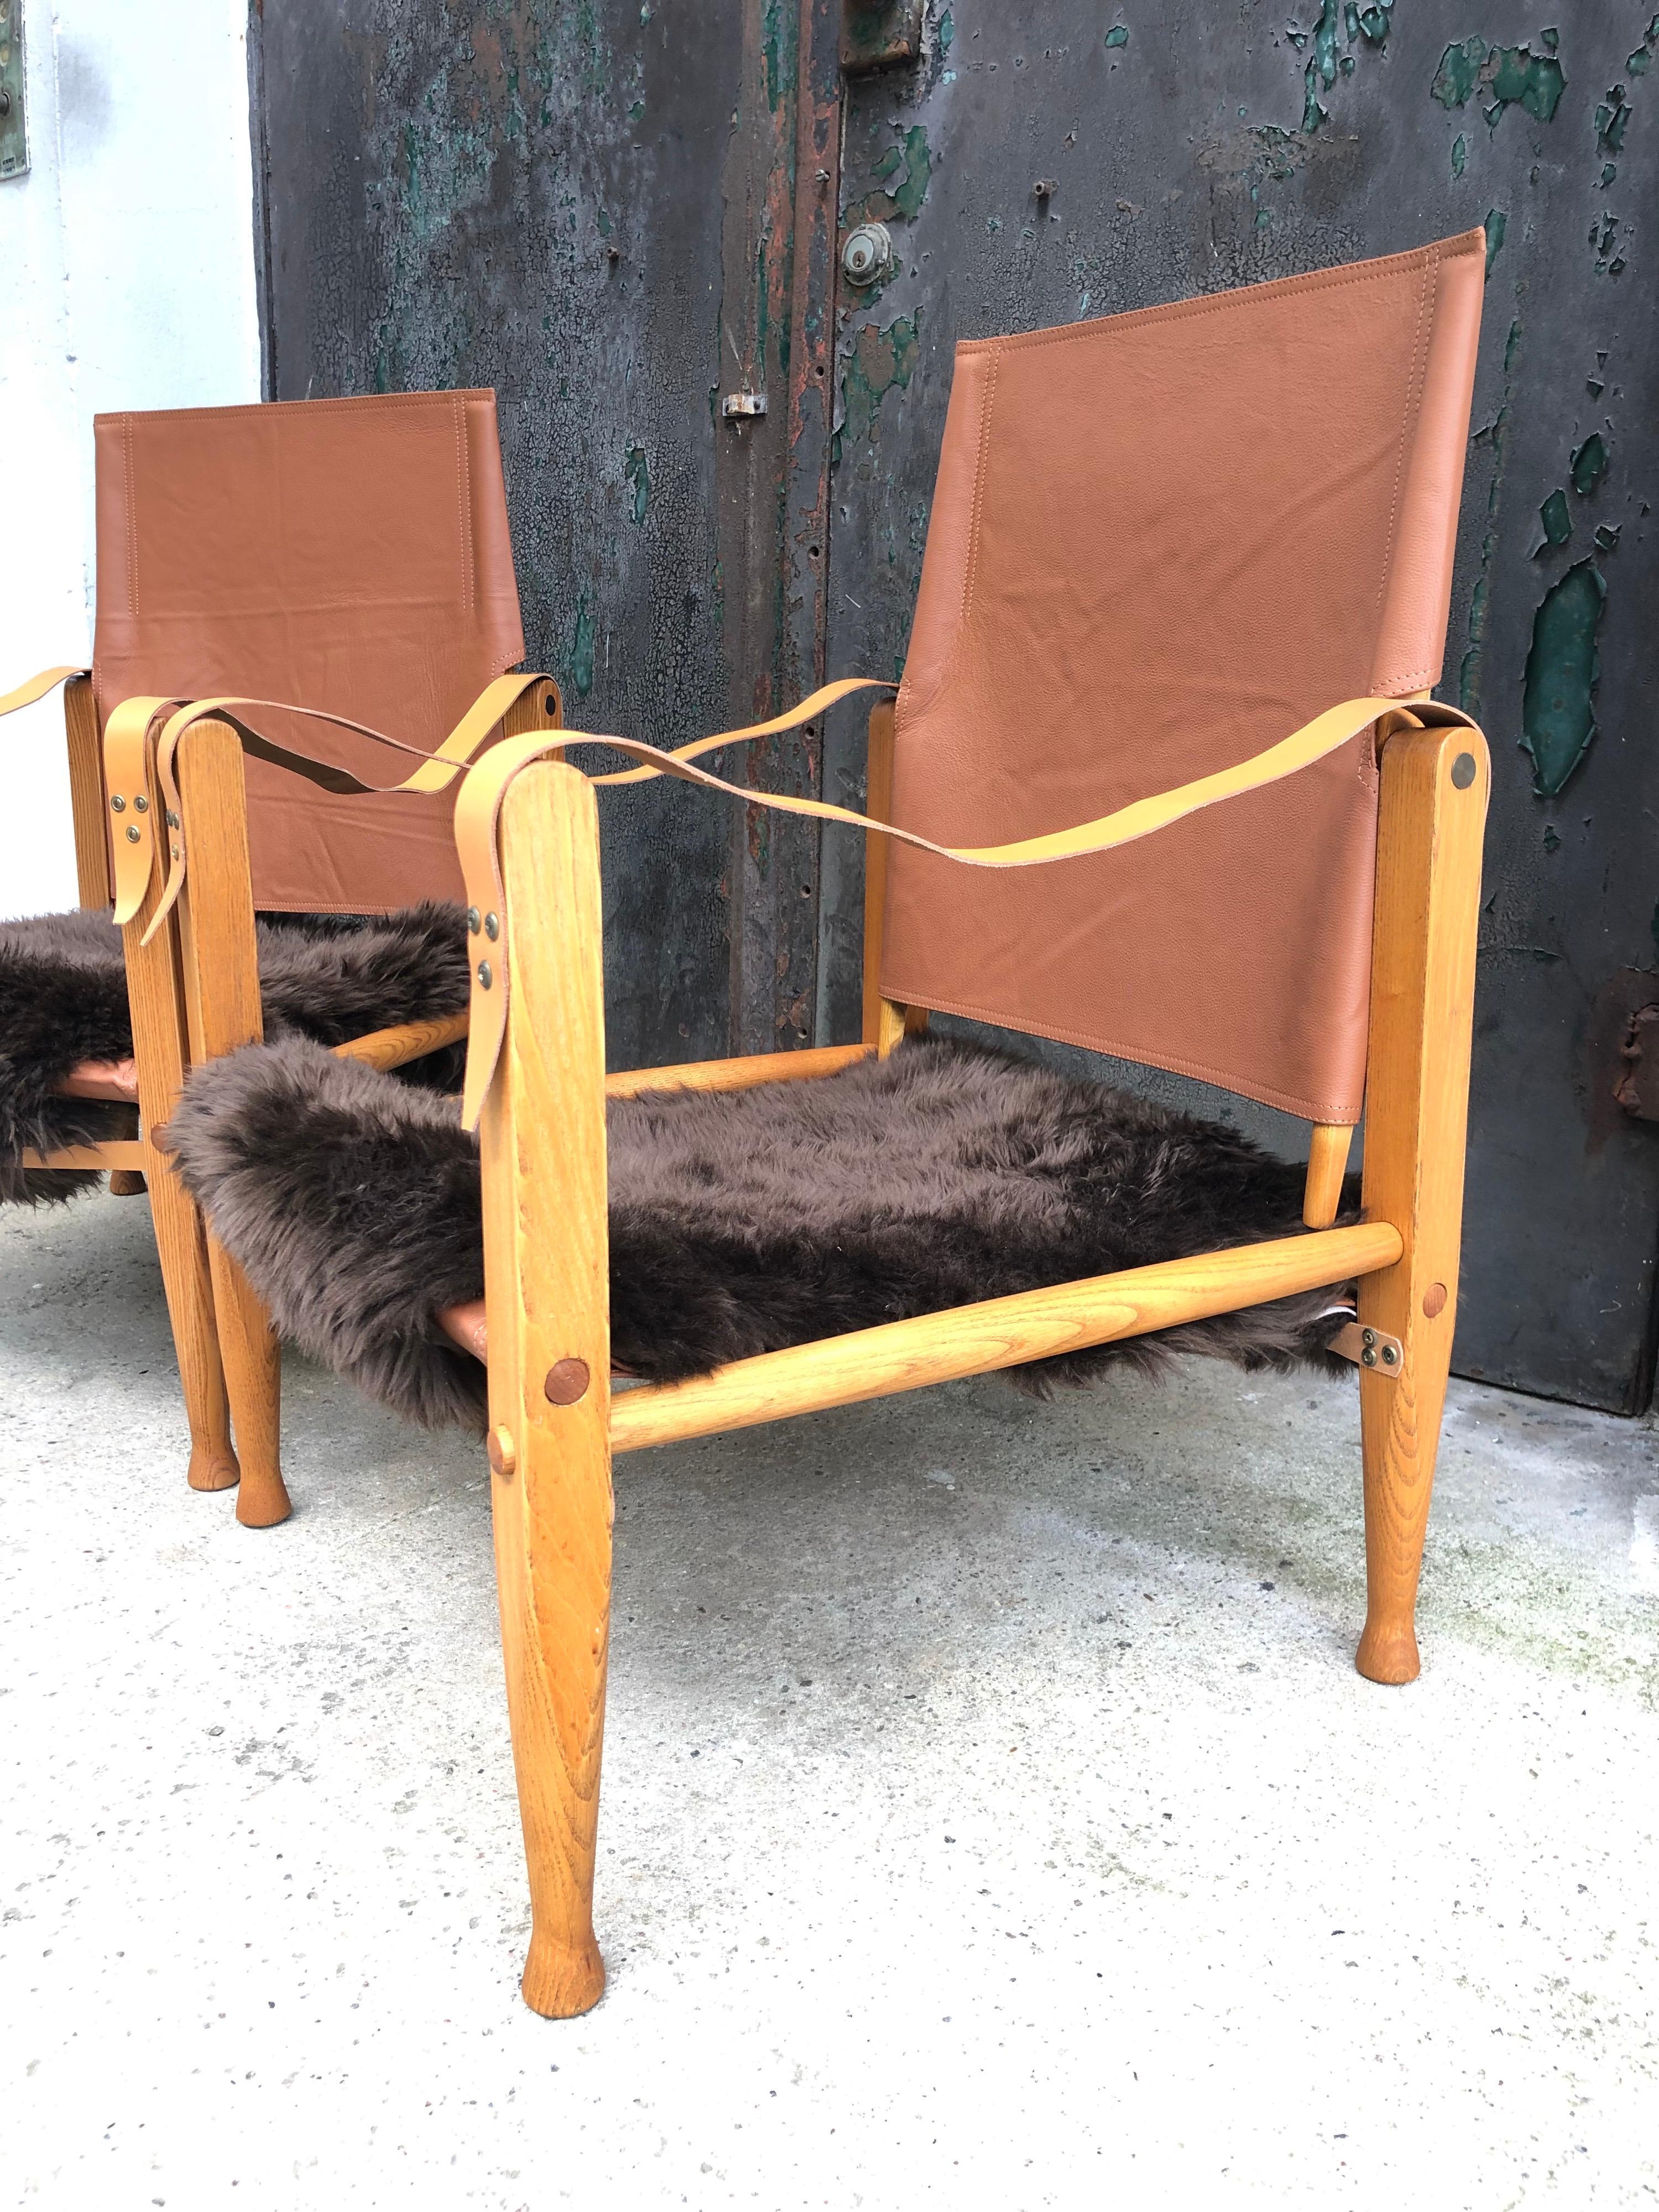 Ein Paar restaurierte Kaare Klint Safaristühle aus den 1960er Jahren von Rud Rasmussen Furniture Markers in Kopenhagen.
KK47000 wurde 1933 als moderner Klappstuhl für zeitgenössische Innenräume entworfen und ist ein Designklassiker.
Gestempelt